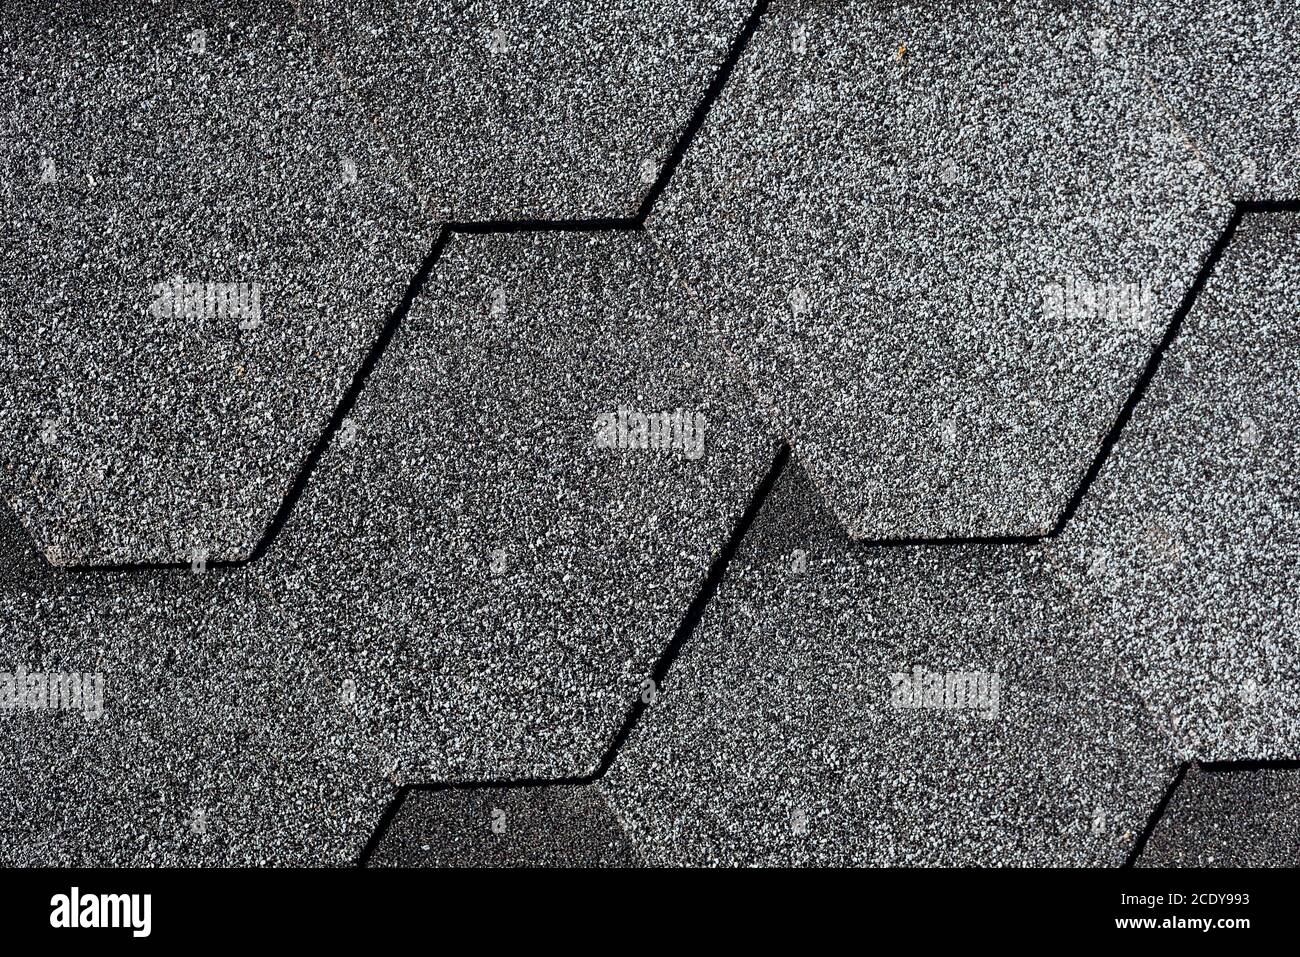 Gros plan de la texture des bardeaux de toit en asphalte gris. Toit recouvert de bardeaux souples hexagonaux ou de carreaux. Arrière-plan géométrique abstrait Banque D'Images